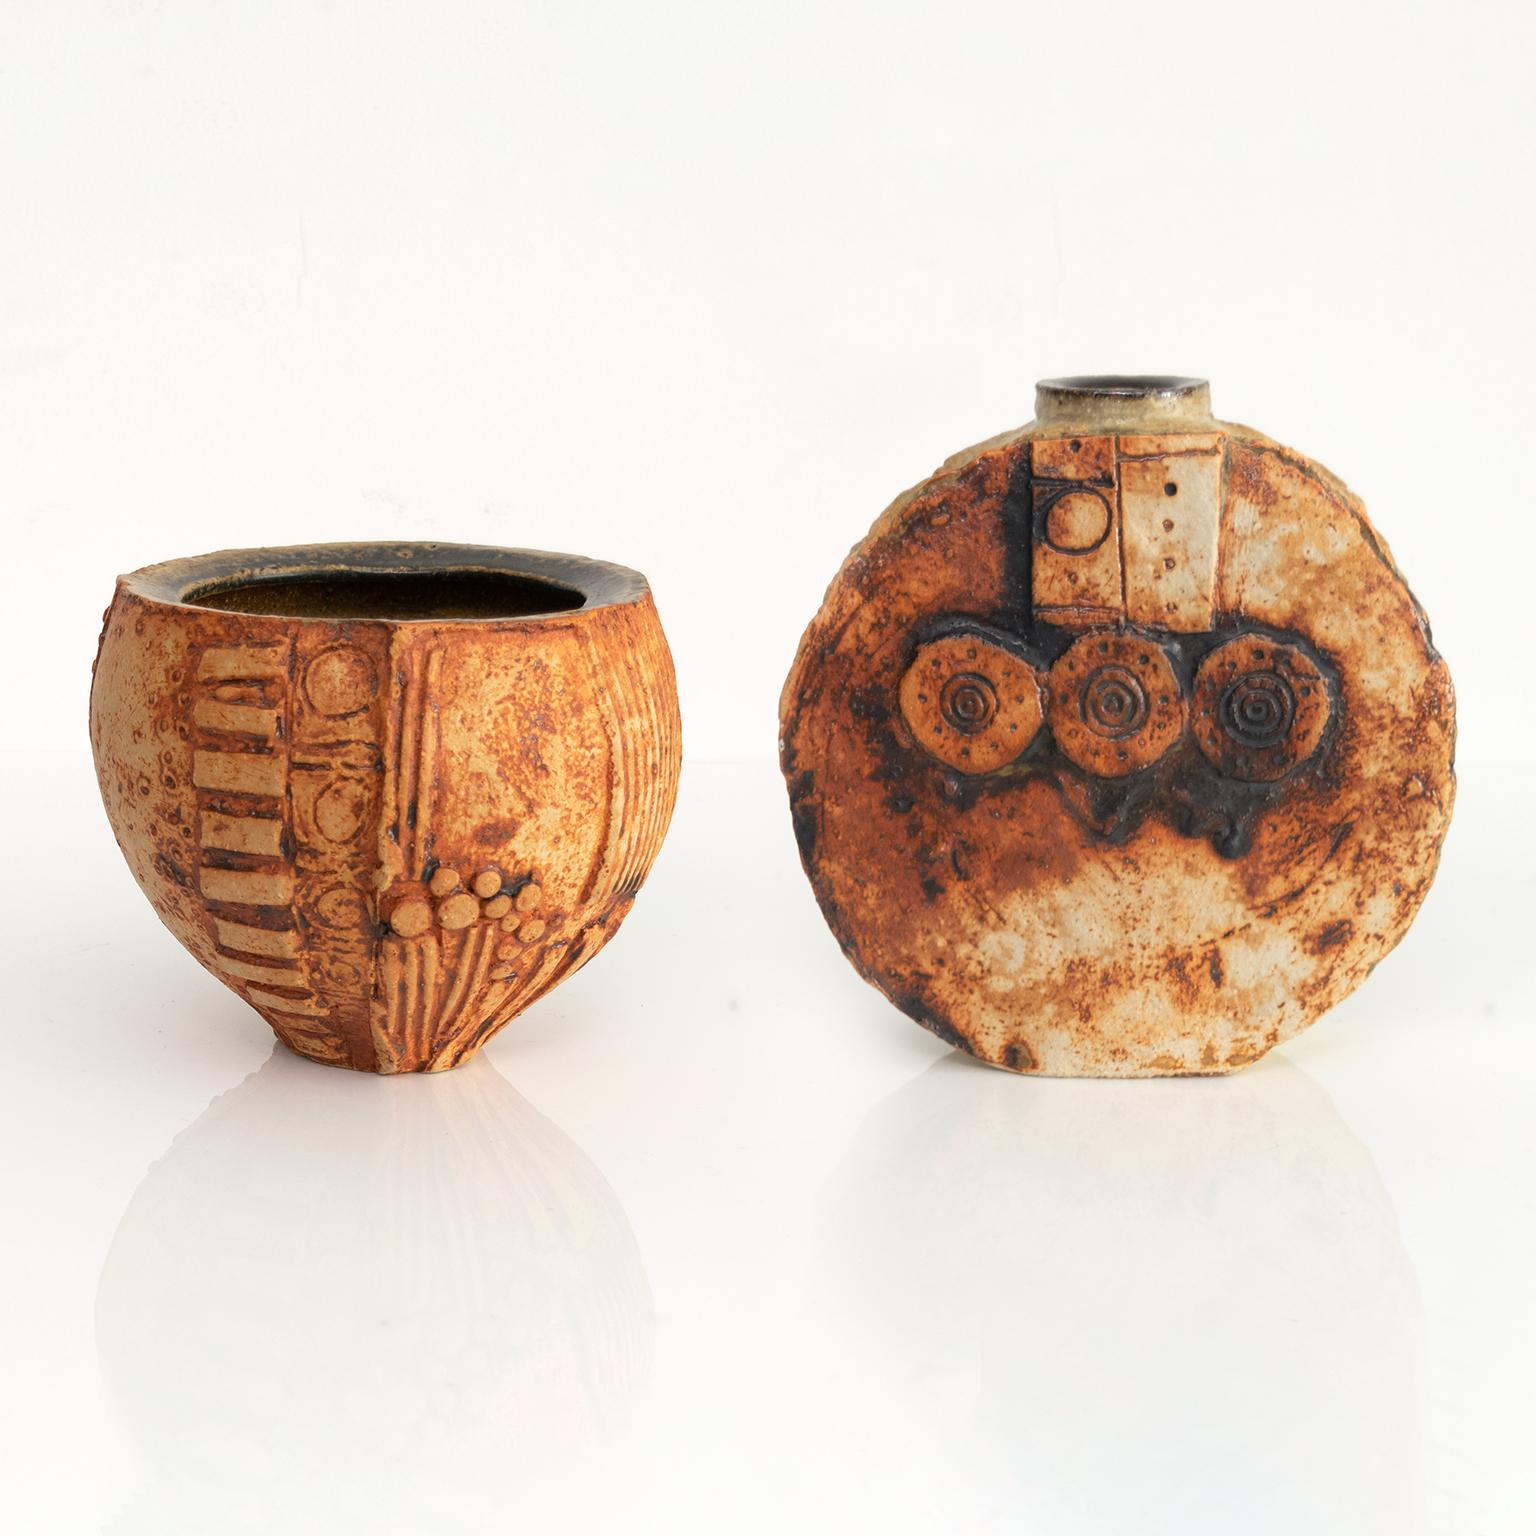 Deux vases d'atelier en céramique expressionniste, datant du milieu du siècle dernier, réalisés par le potier et artiste britannique Bernard Rooke. Les vases sont partiellement émaillés et sont détaillés avec des motifs de surface en